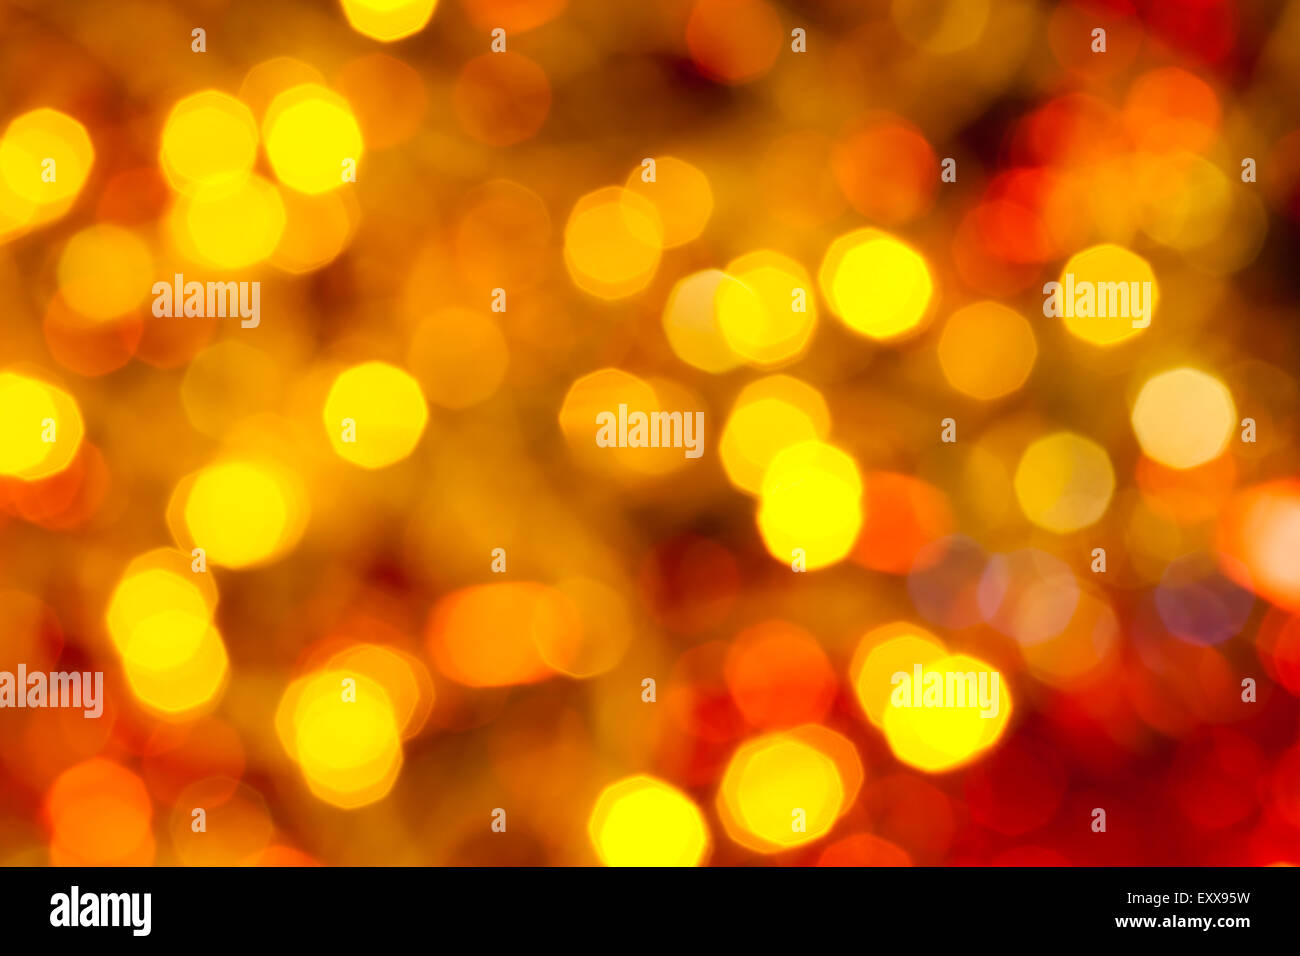 Abstract sfondo sfocato - di colore giallo scuro e rosso lo sfarfallio delle luci di Natale di le ghirlande elettriche su albero di Natale Foto Stock